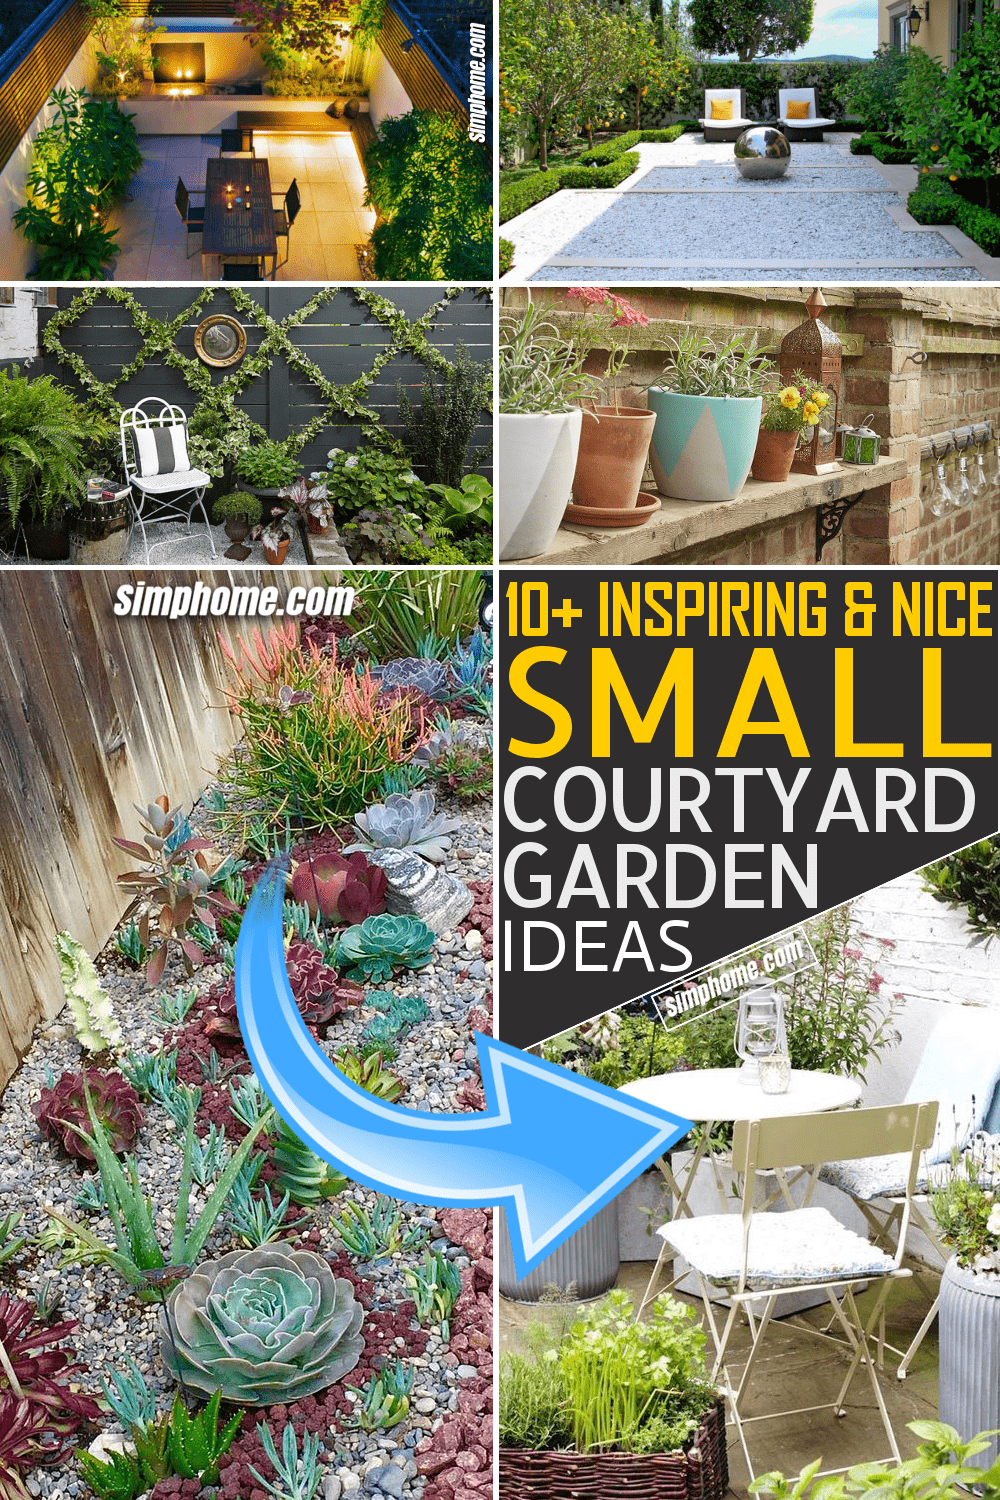 Simphome.com 10 Small Courtyard Garden Ideas Featured Pinterest Image